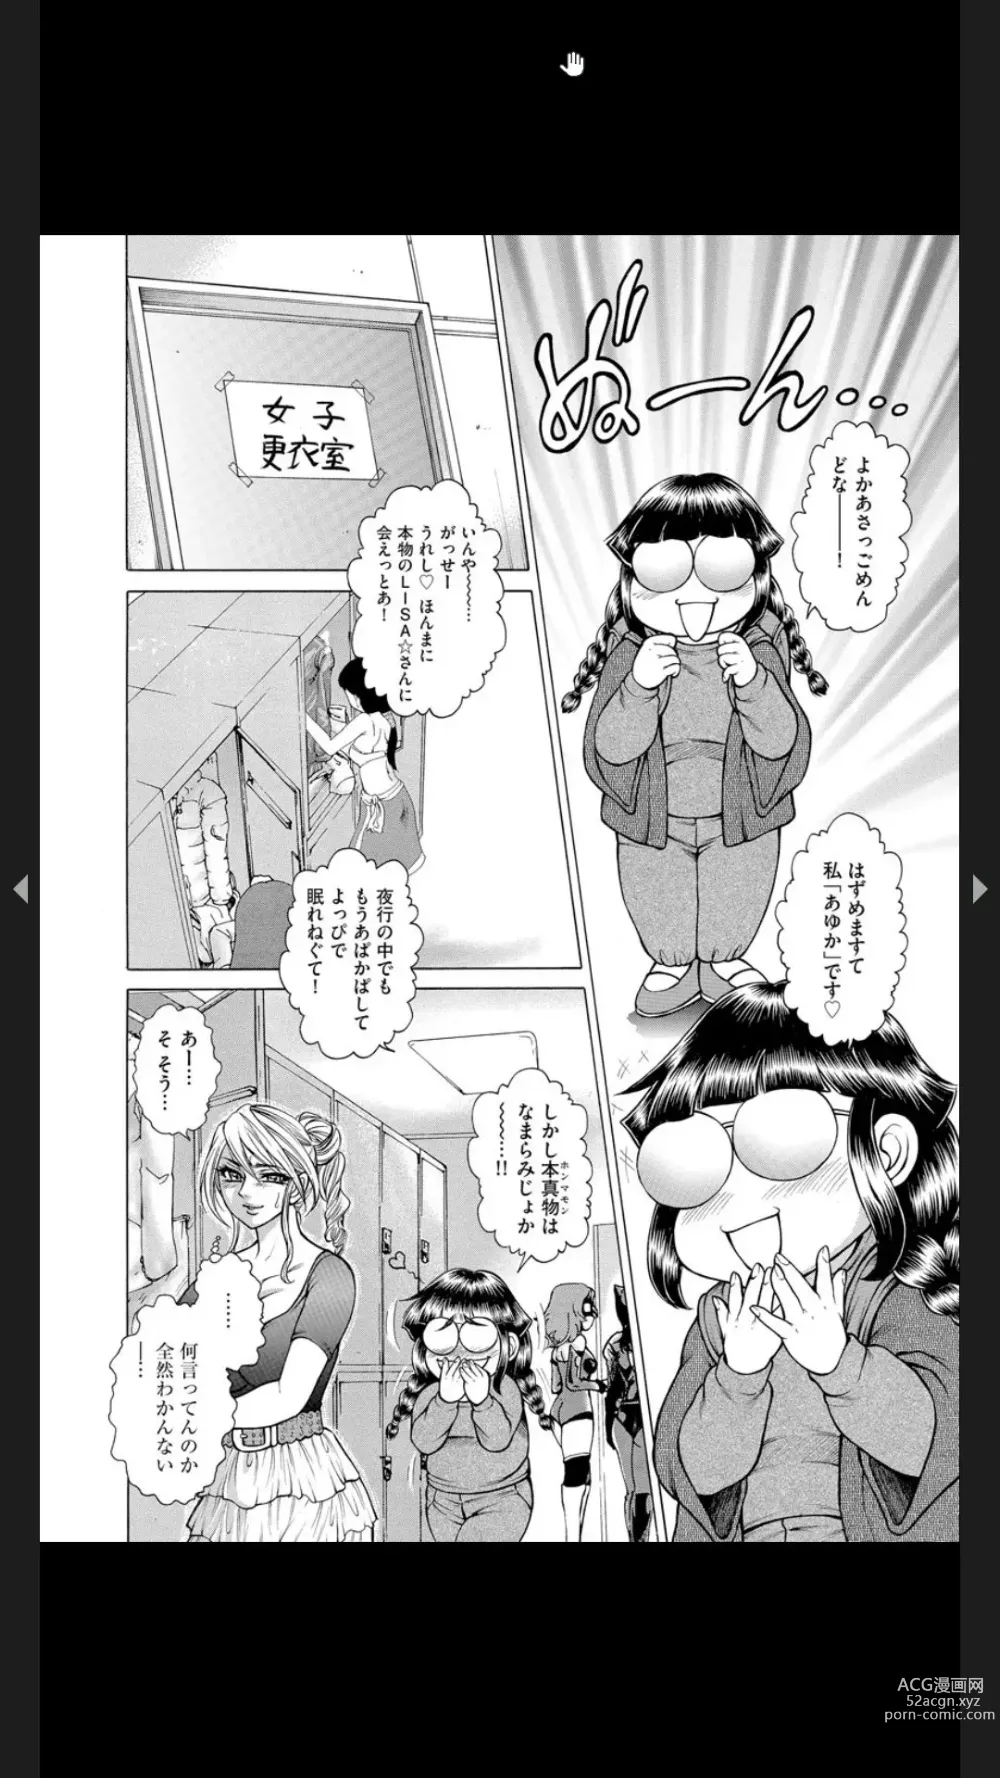 Page 185 of manga Injuku Meniku Mugobatsu